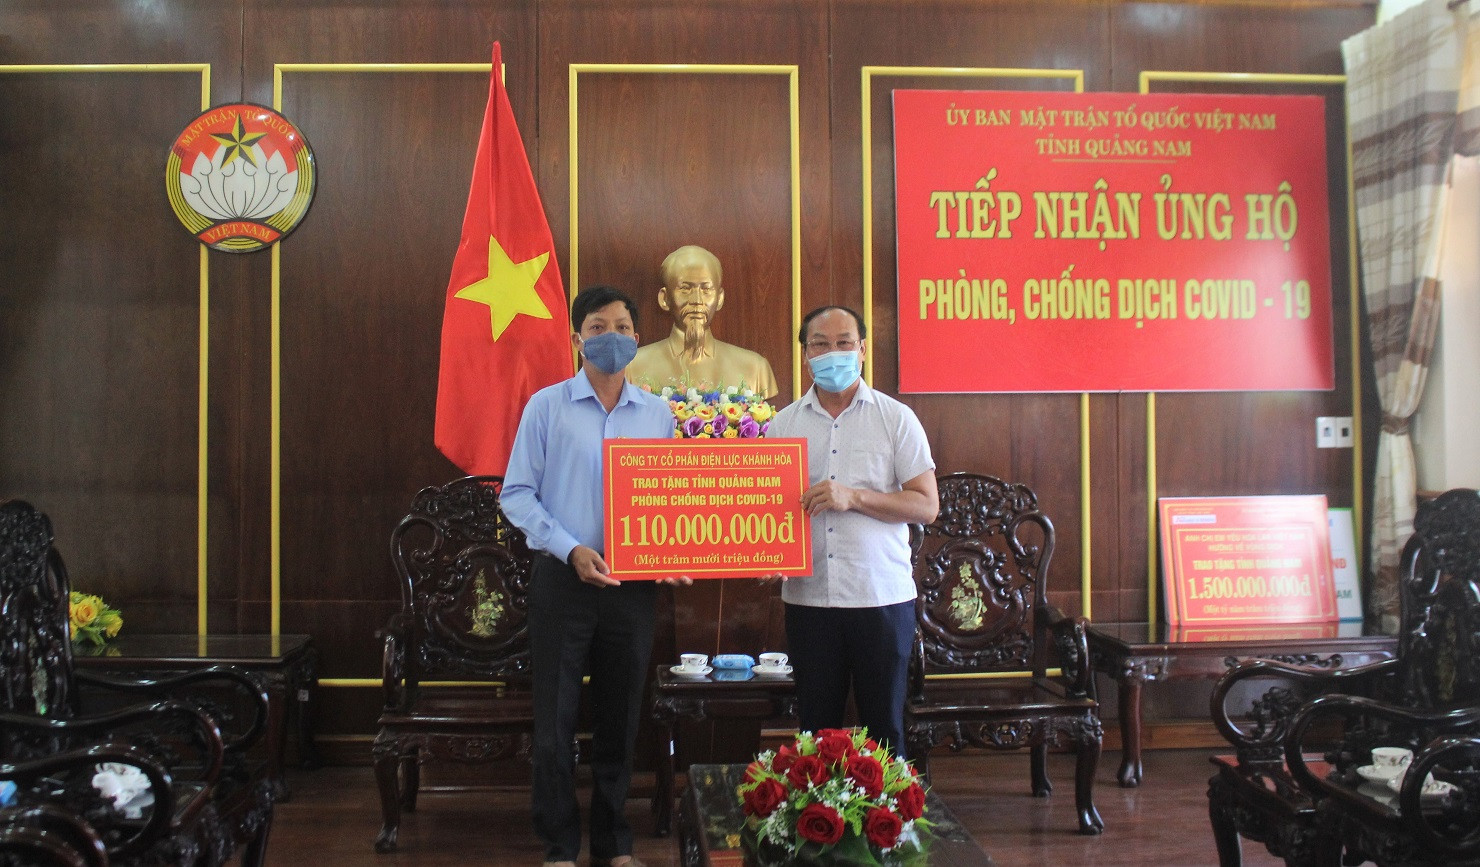  Mặt trận tỉnh Quảng Nam tiếp nhận tiền ủng hộ phòng, chống dịch.